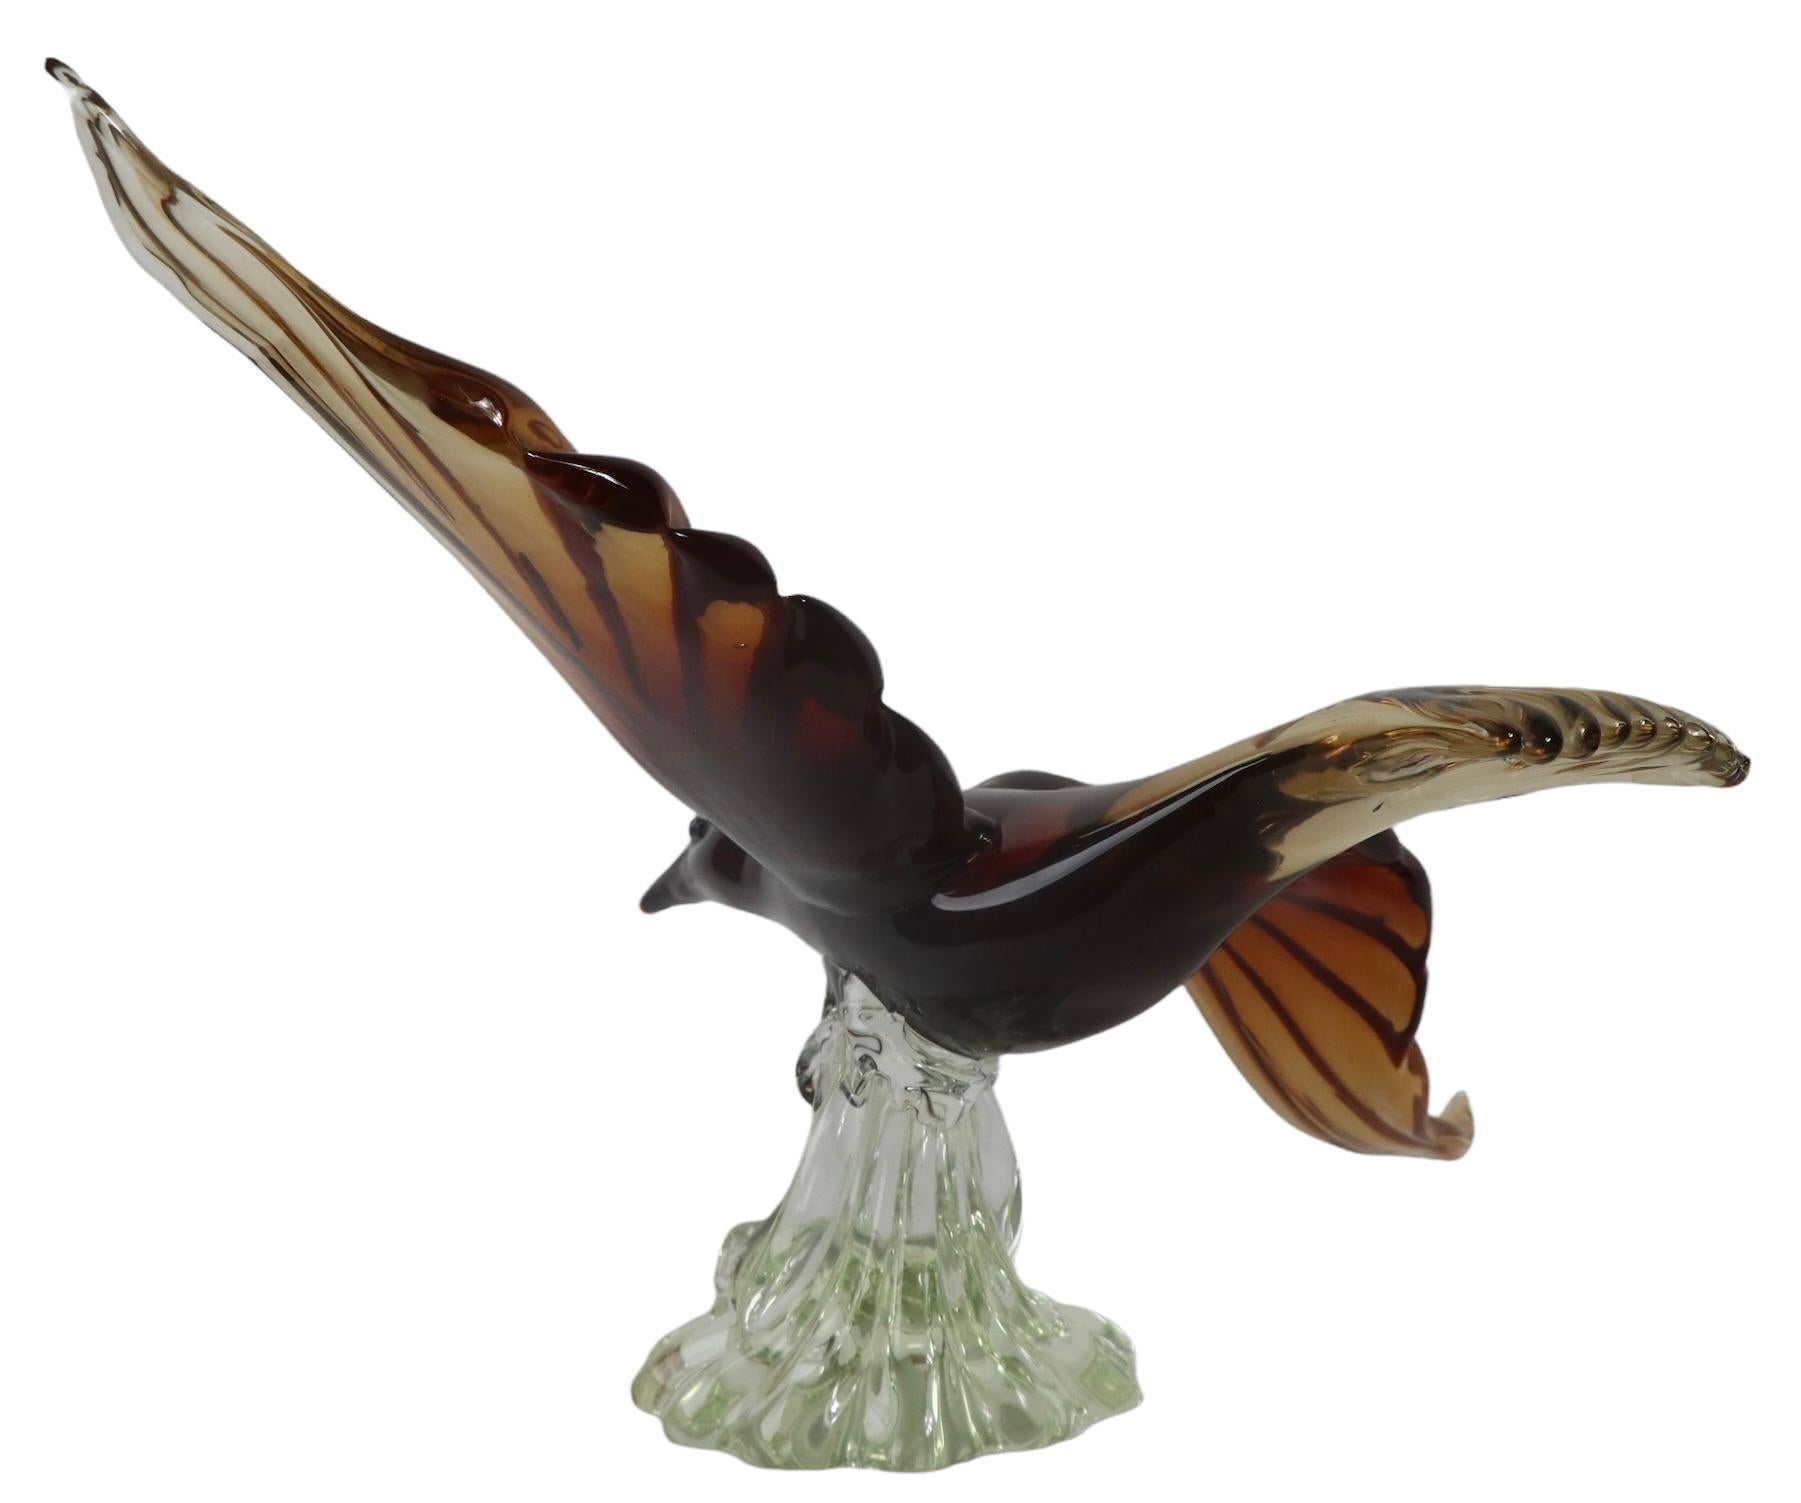 Spektakuläre Skulptur eines Vogels im Flug, hergestellt in Murano, Italien von Barovier. Diese beeindruckende Glasskulptur ist in perfektem Zustand, frei von Beschädigungen oder Reparaturen. Der organische Sockel aus klarem Glas trägt den